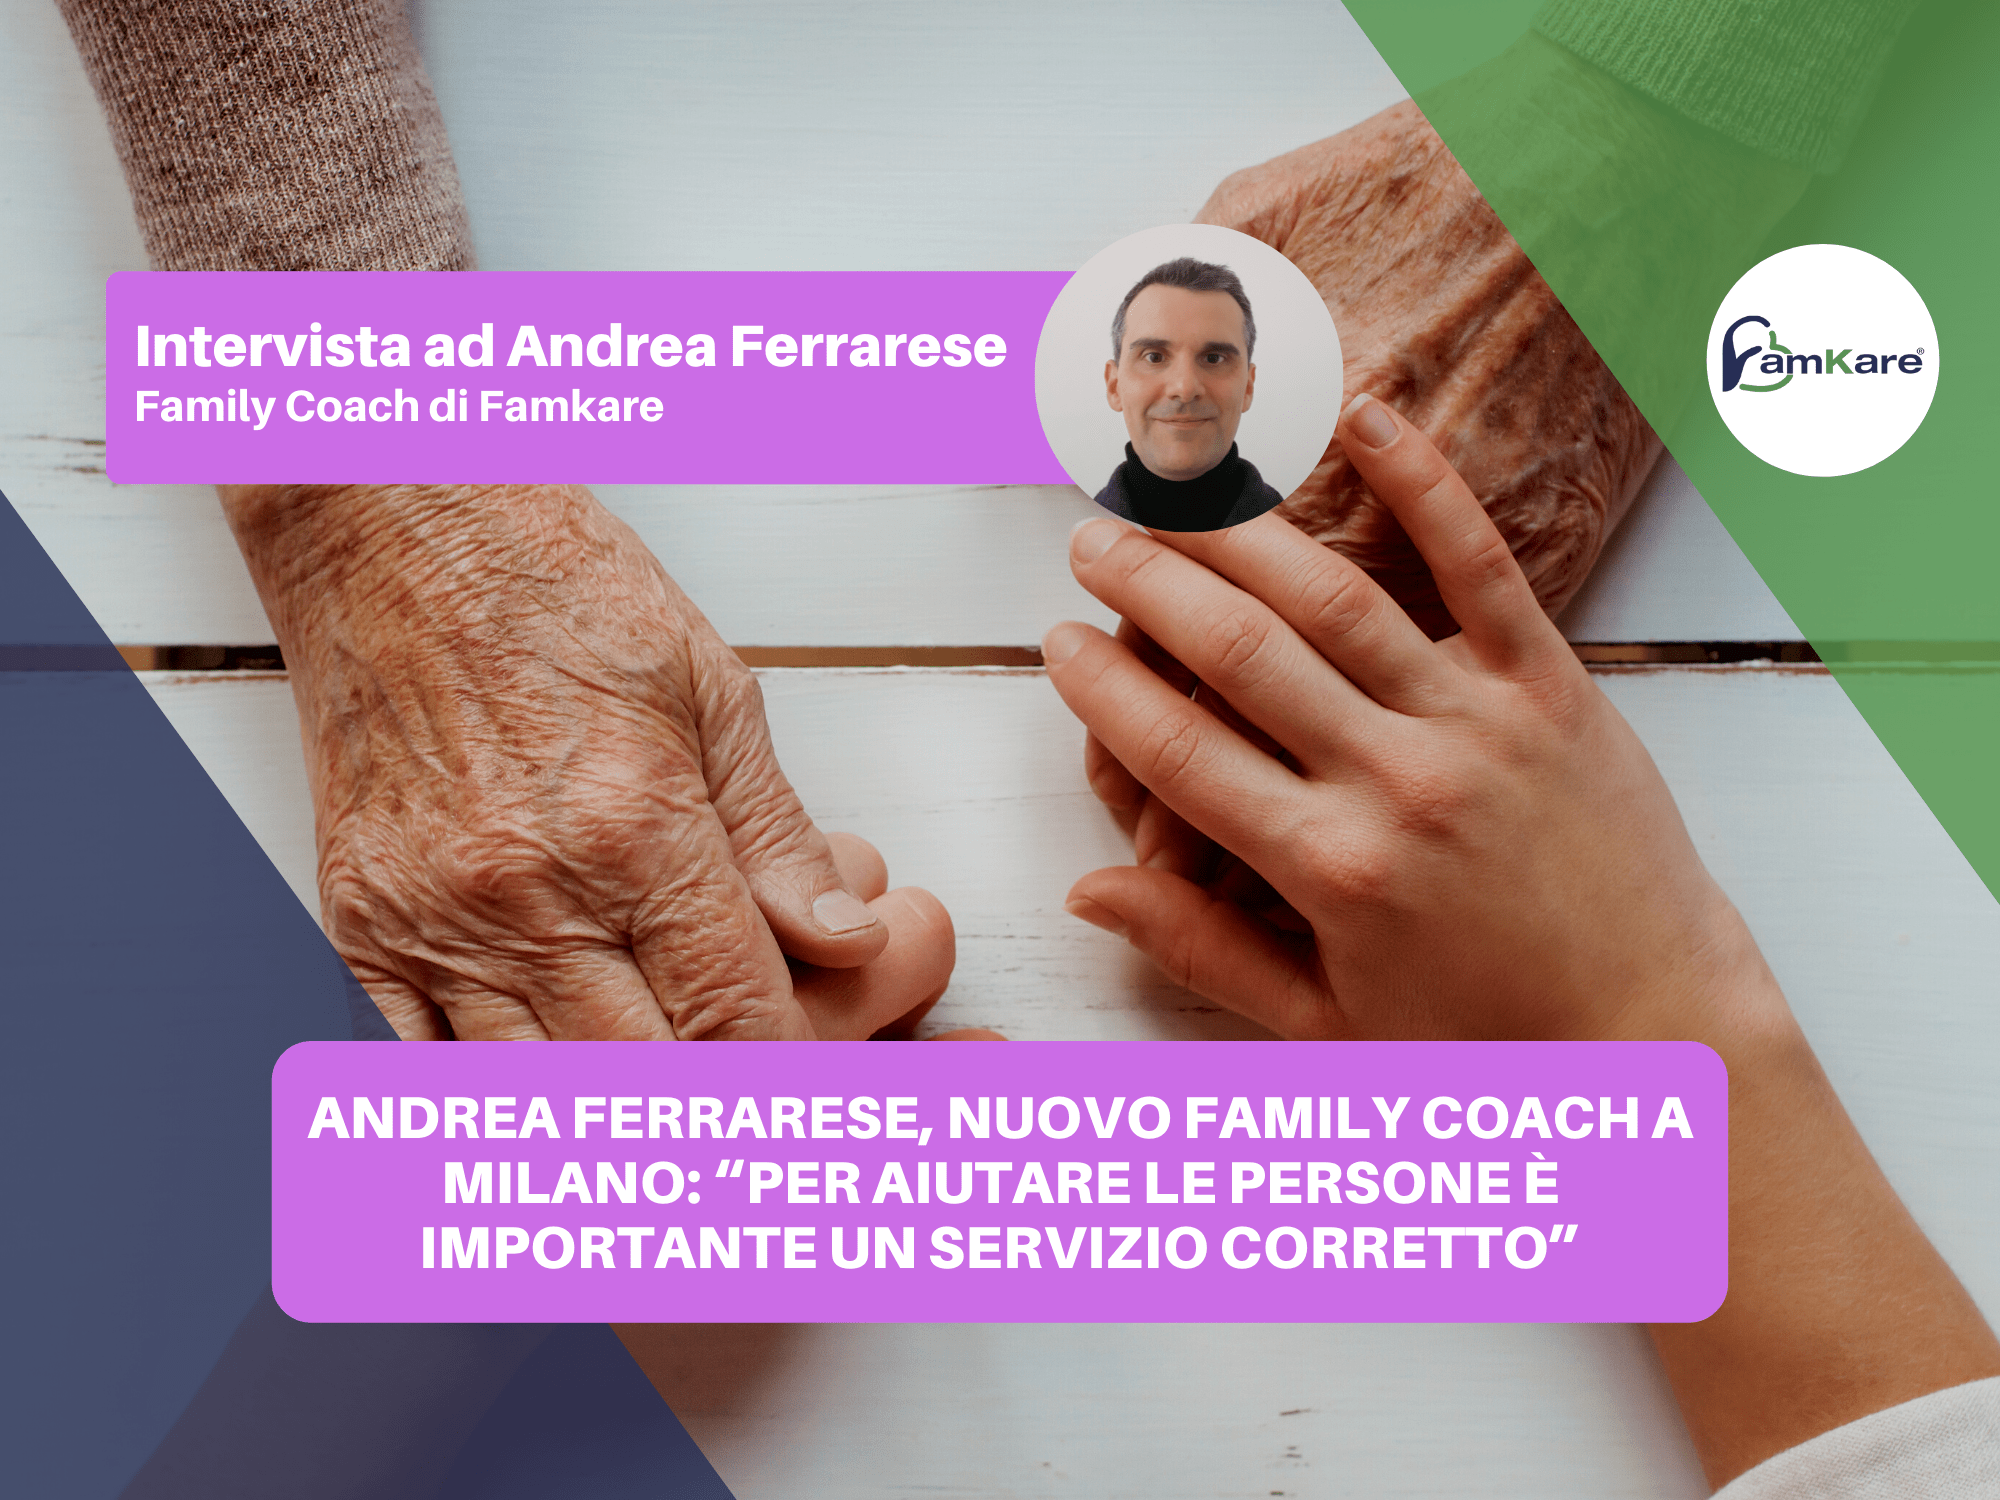 Andrea Ferrarese, nuovo Family Coach a Milano: “Per aiutare le persone è importante un servizio corretto”